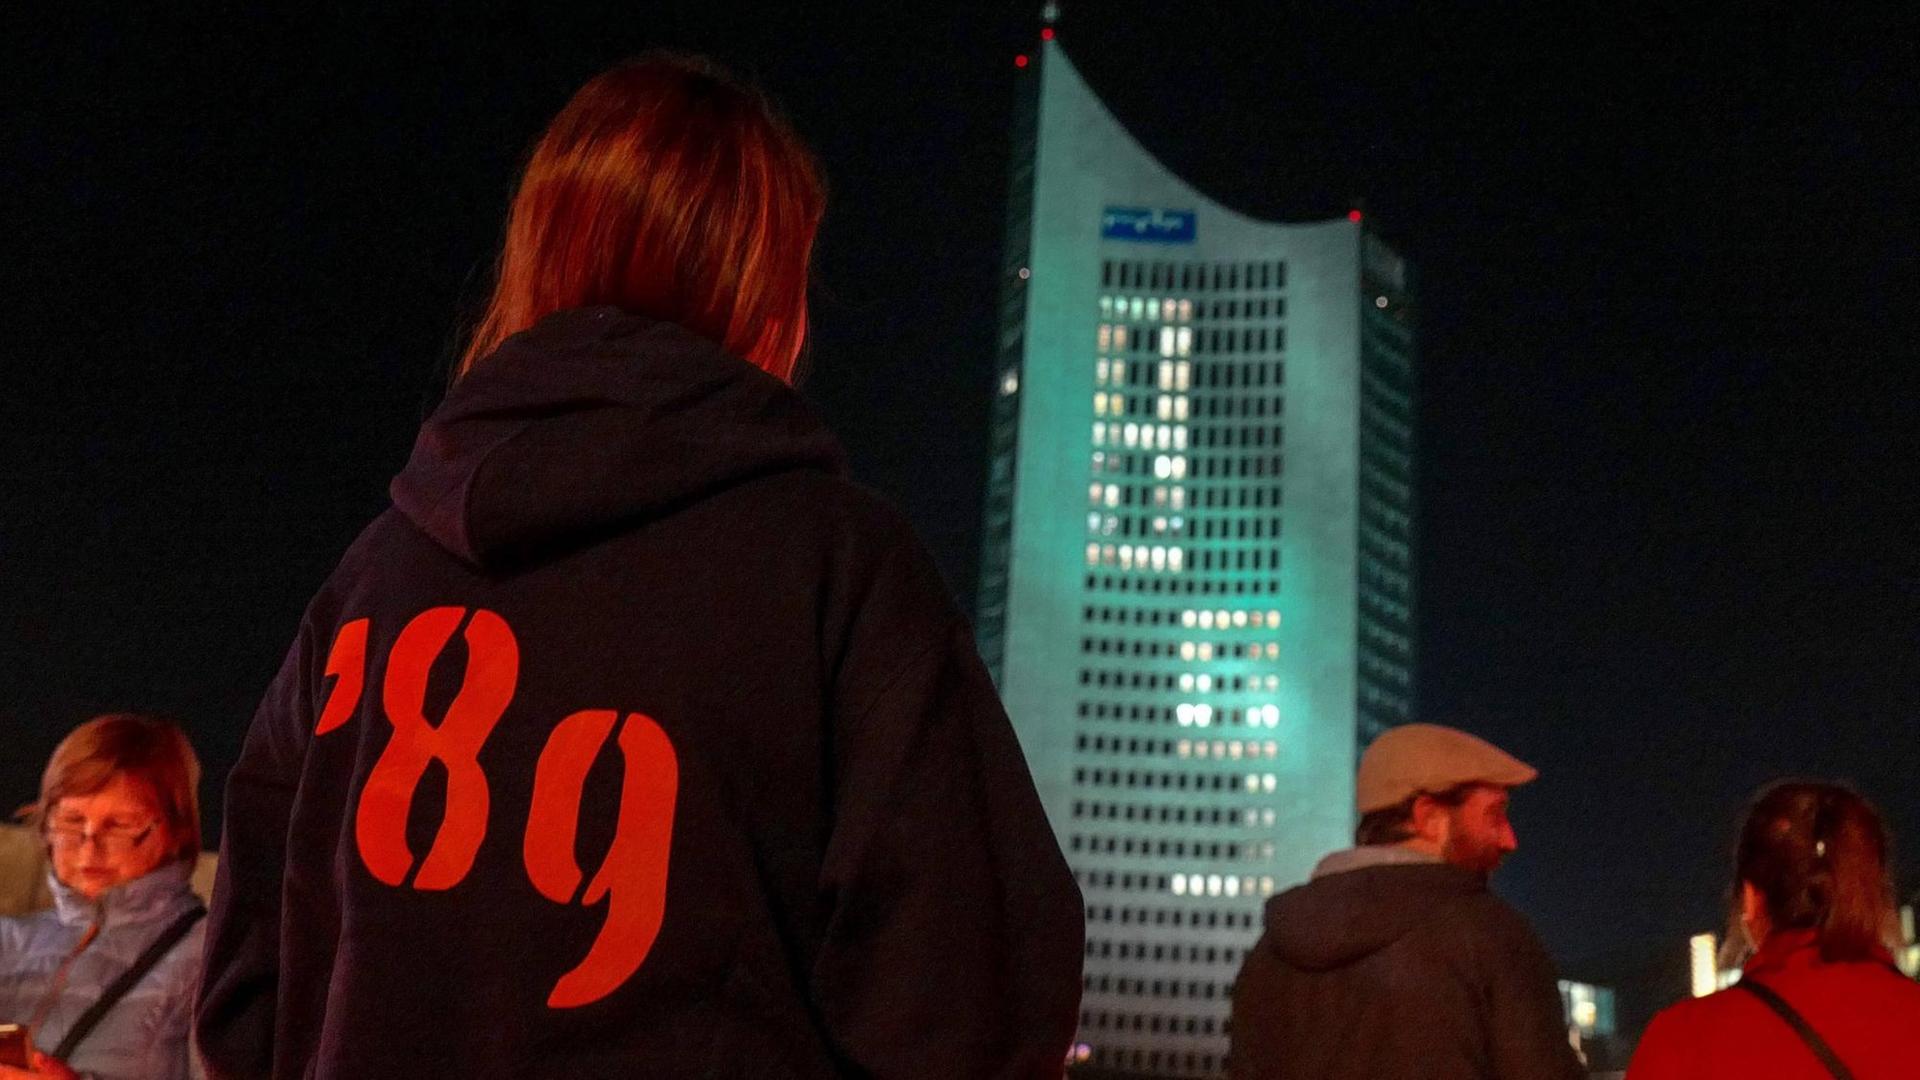 Eine junge Frau steht mit einem Pulli, auf dem die Aufschrift "89" zu lesen ist, vor dem City-Hochhaus in Leipzig.